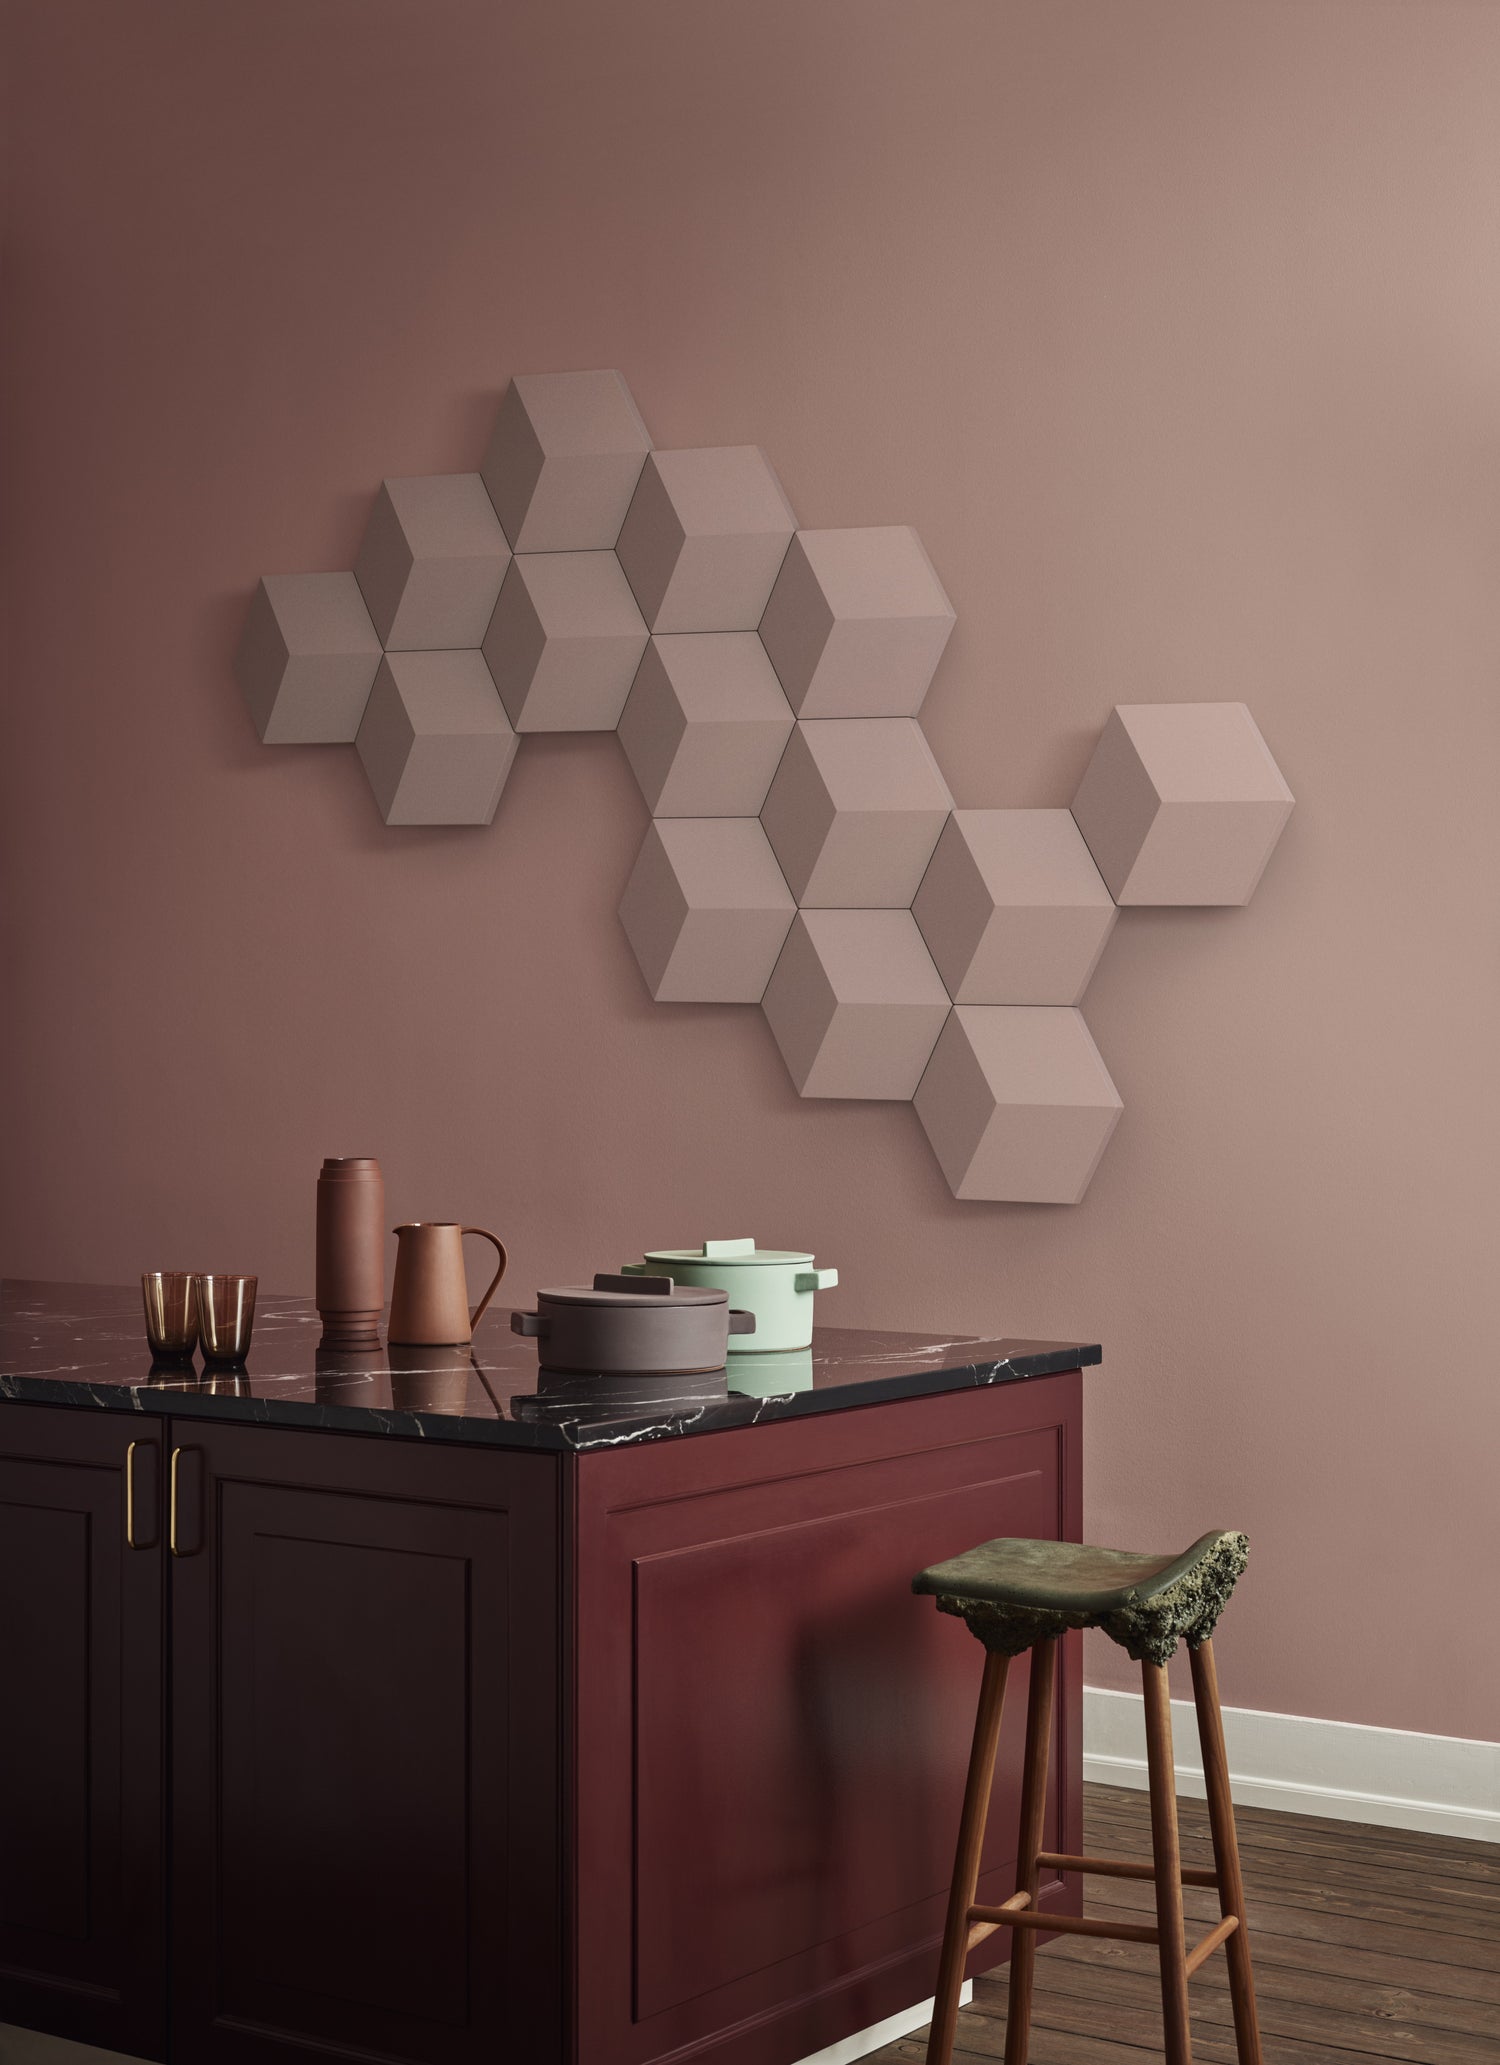 BeoSound Shape einfarbing in heller Konfiguration an einer Wand in einer Küche